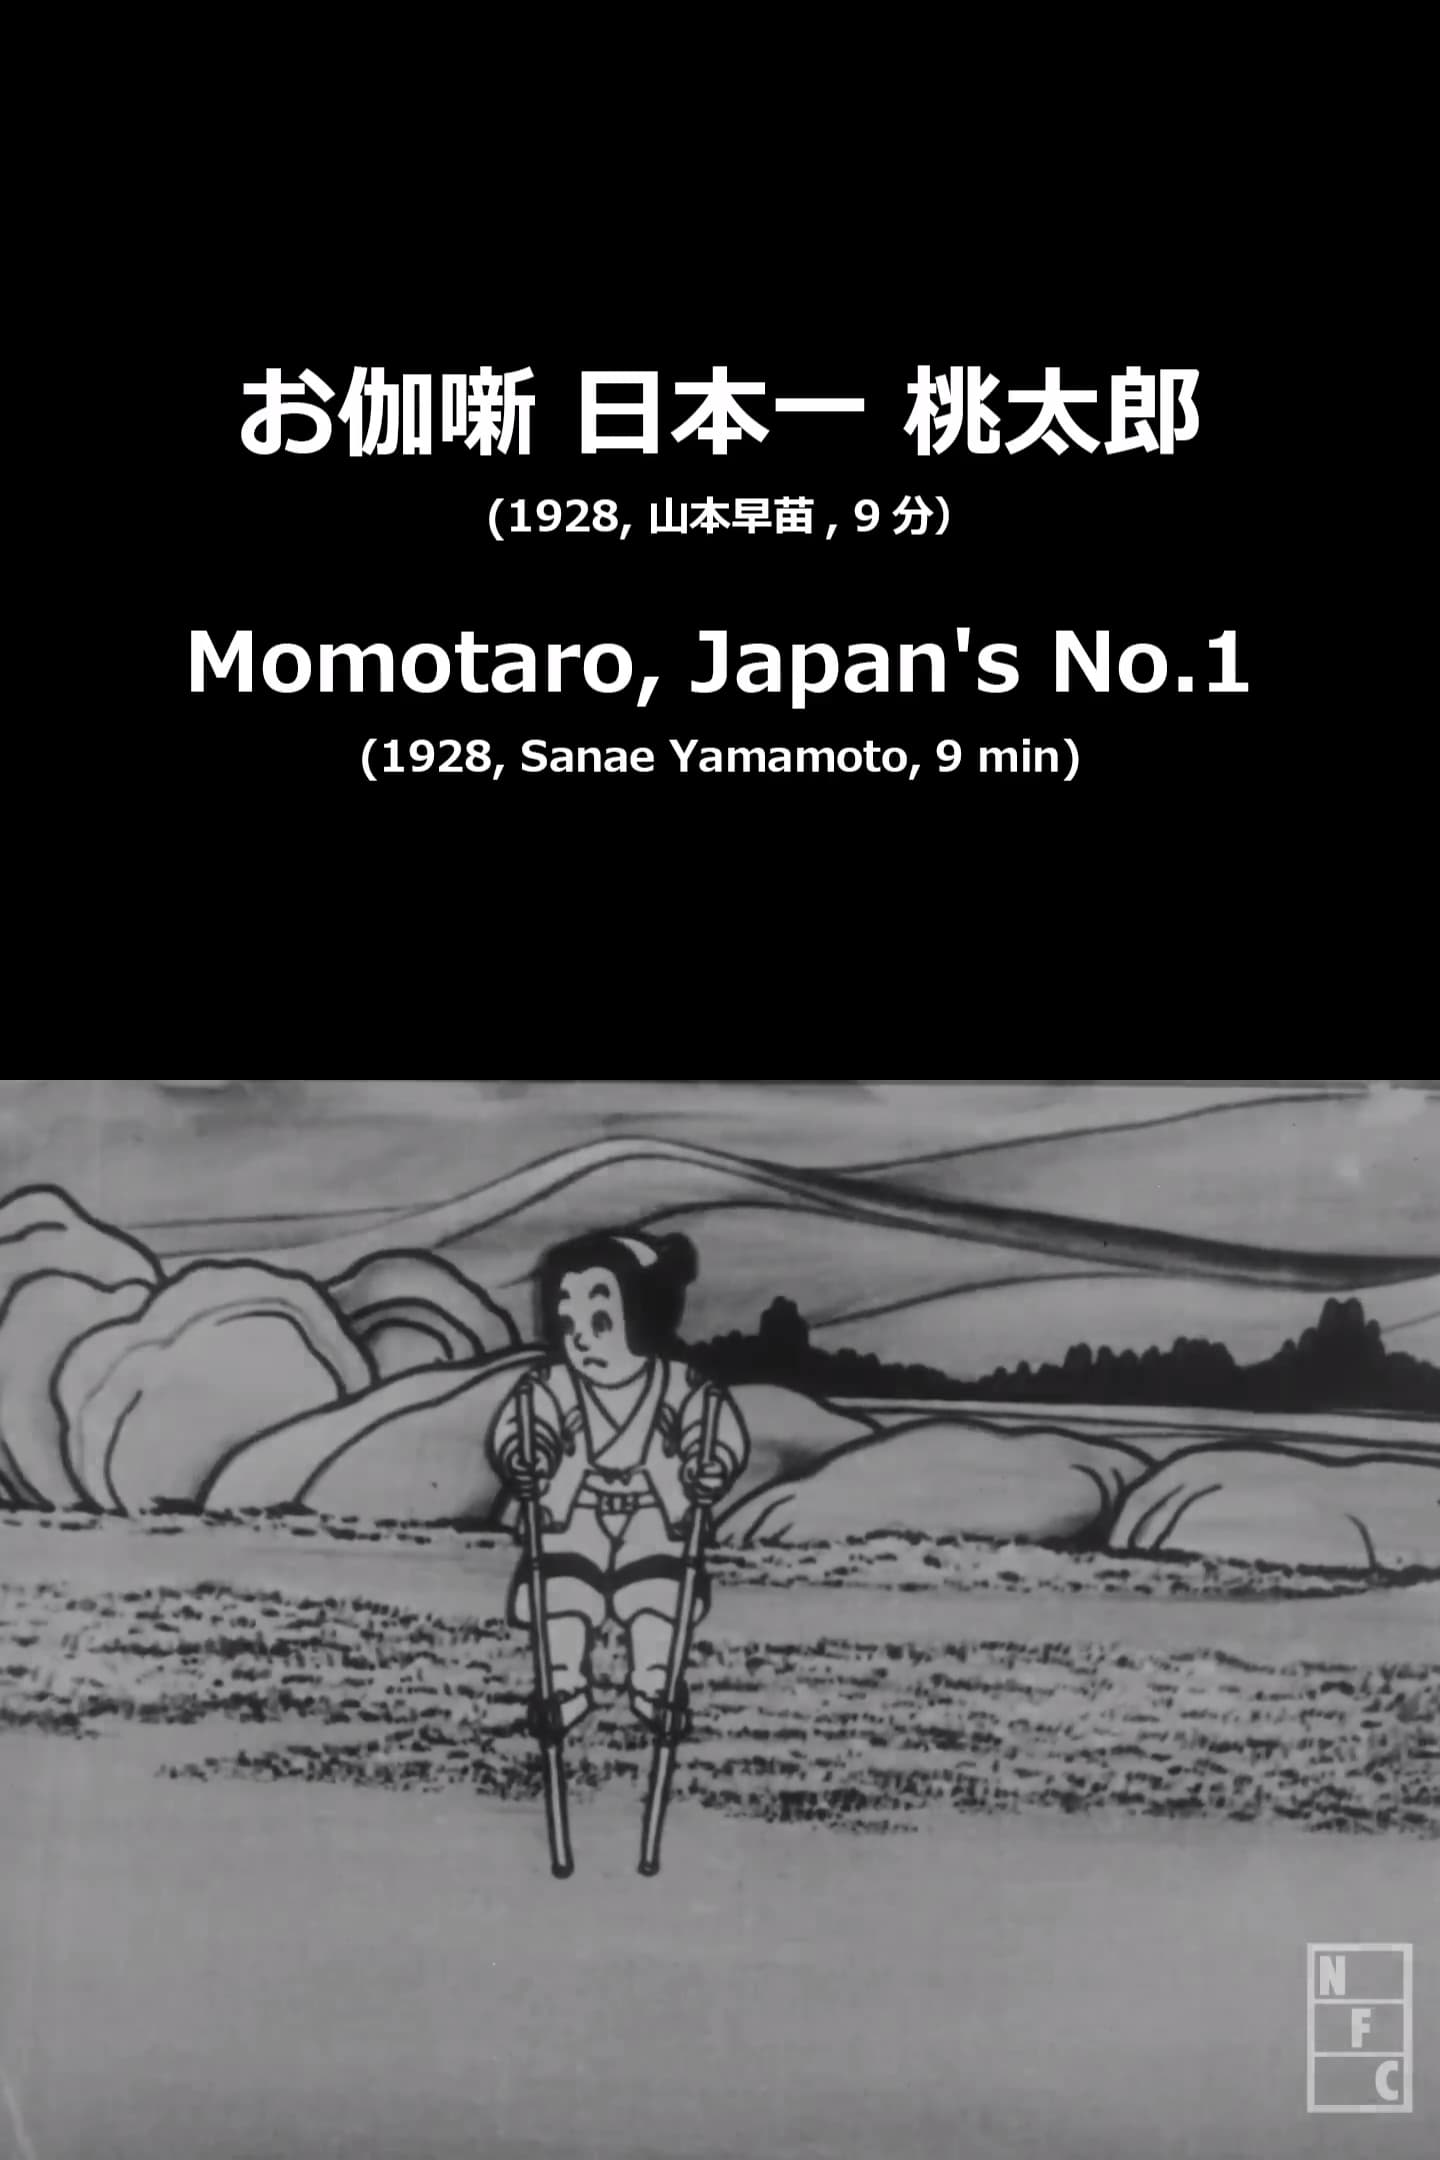 Momotaro, Japan's No.1 (1928)